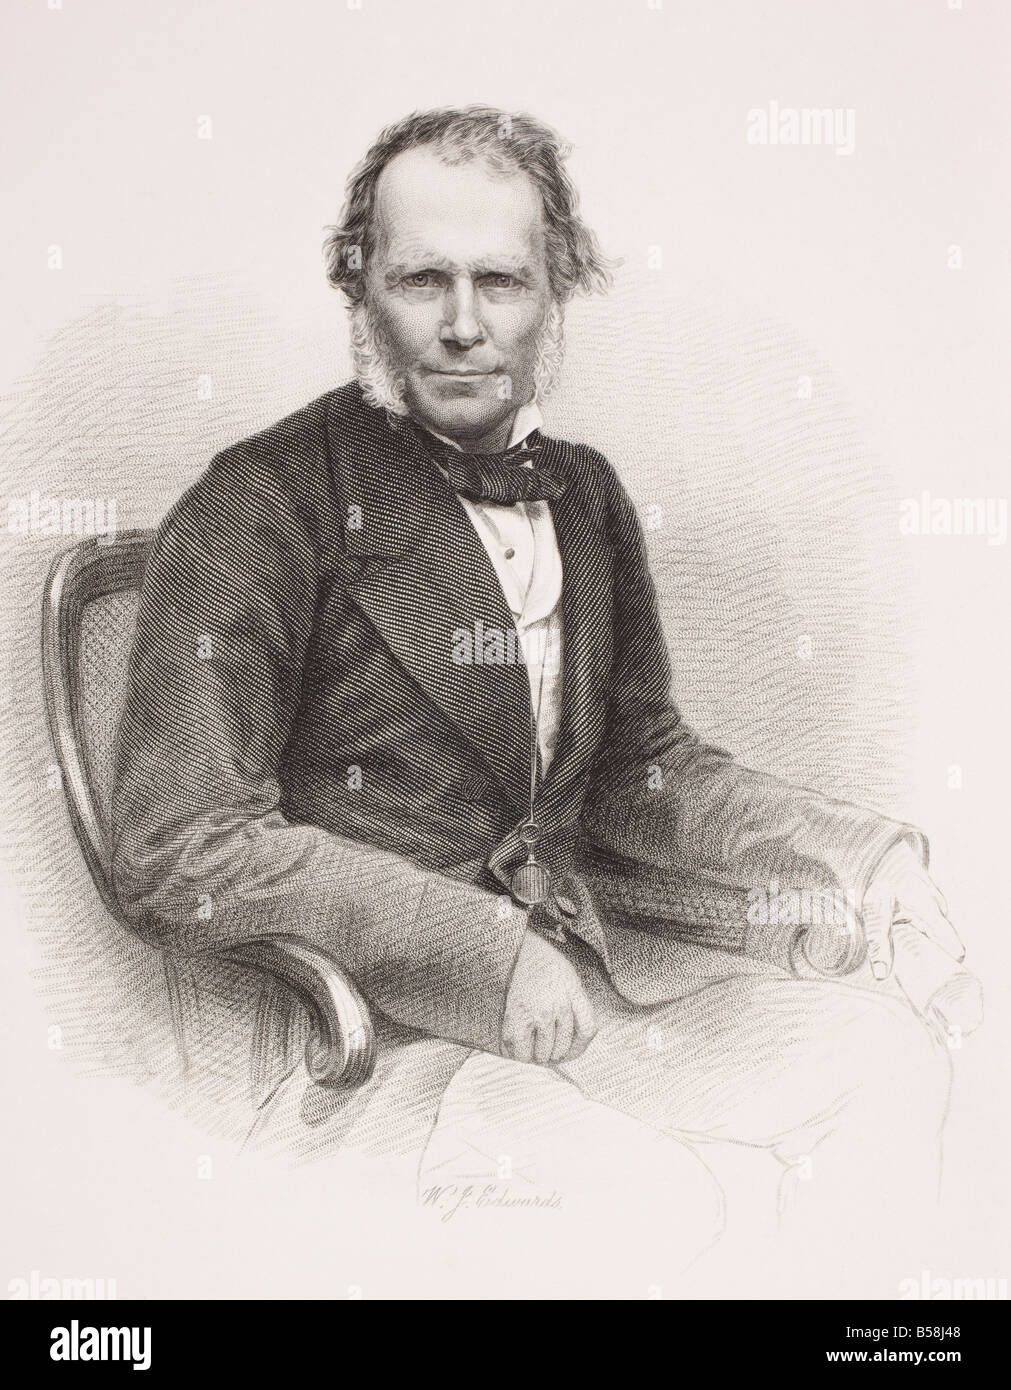 Sir James Brooke, 1803-1868. Premier Rajah blanc de Sarawak. Du livre Galerie des Portraits historiques, publié en 1880. Banque D'Images